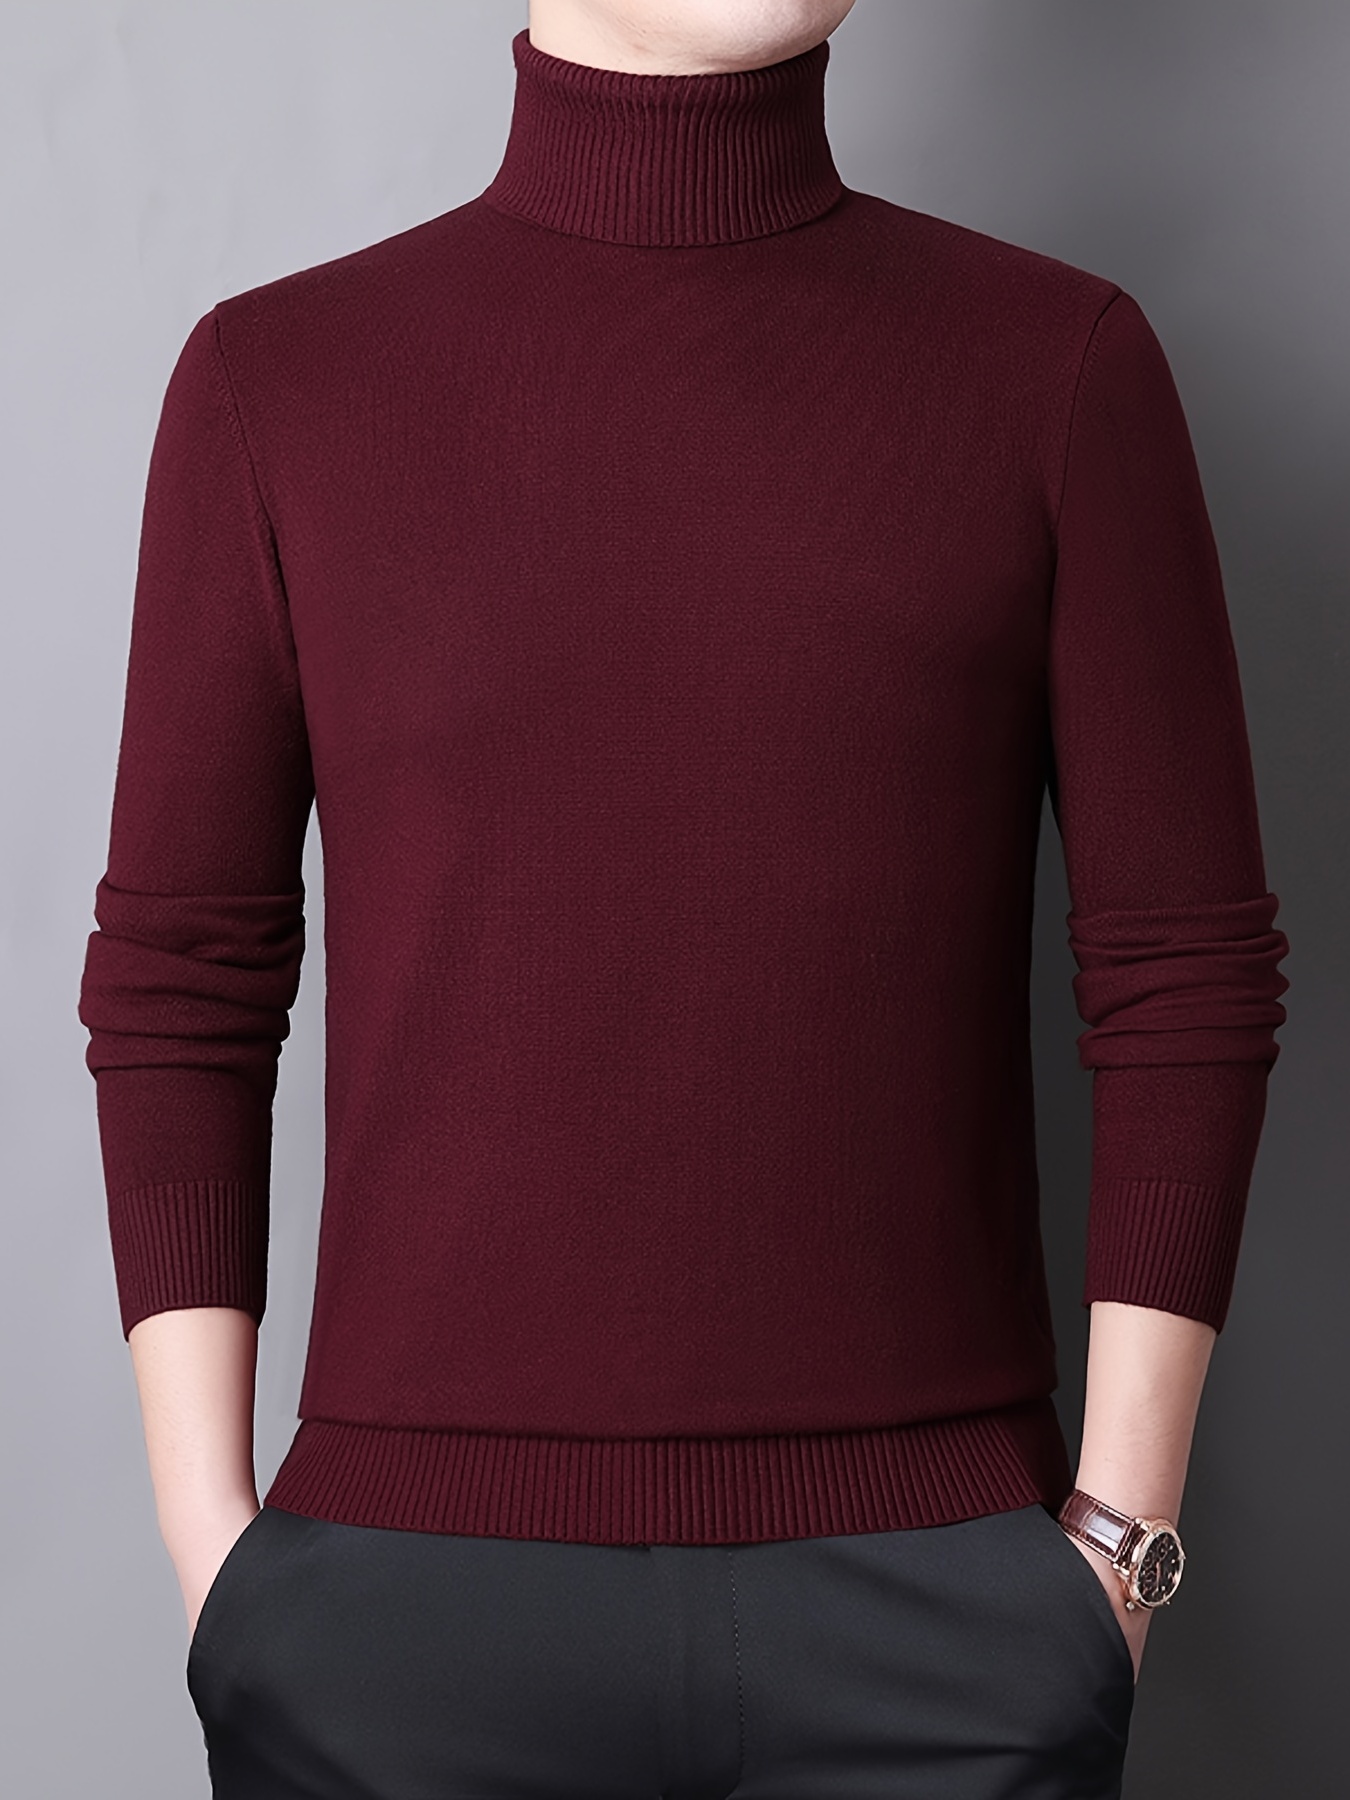 Comprar Nuevo suéter de punto cálido de invierno para hombre, Jersey  informal de cuello alto con personalidad fresca